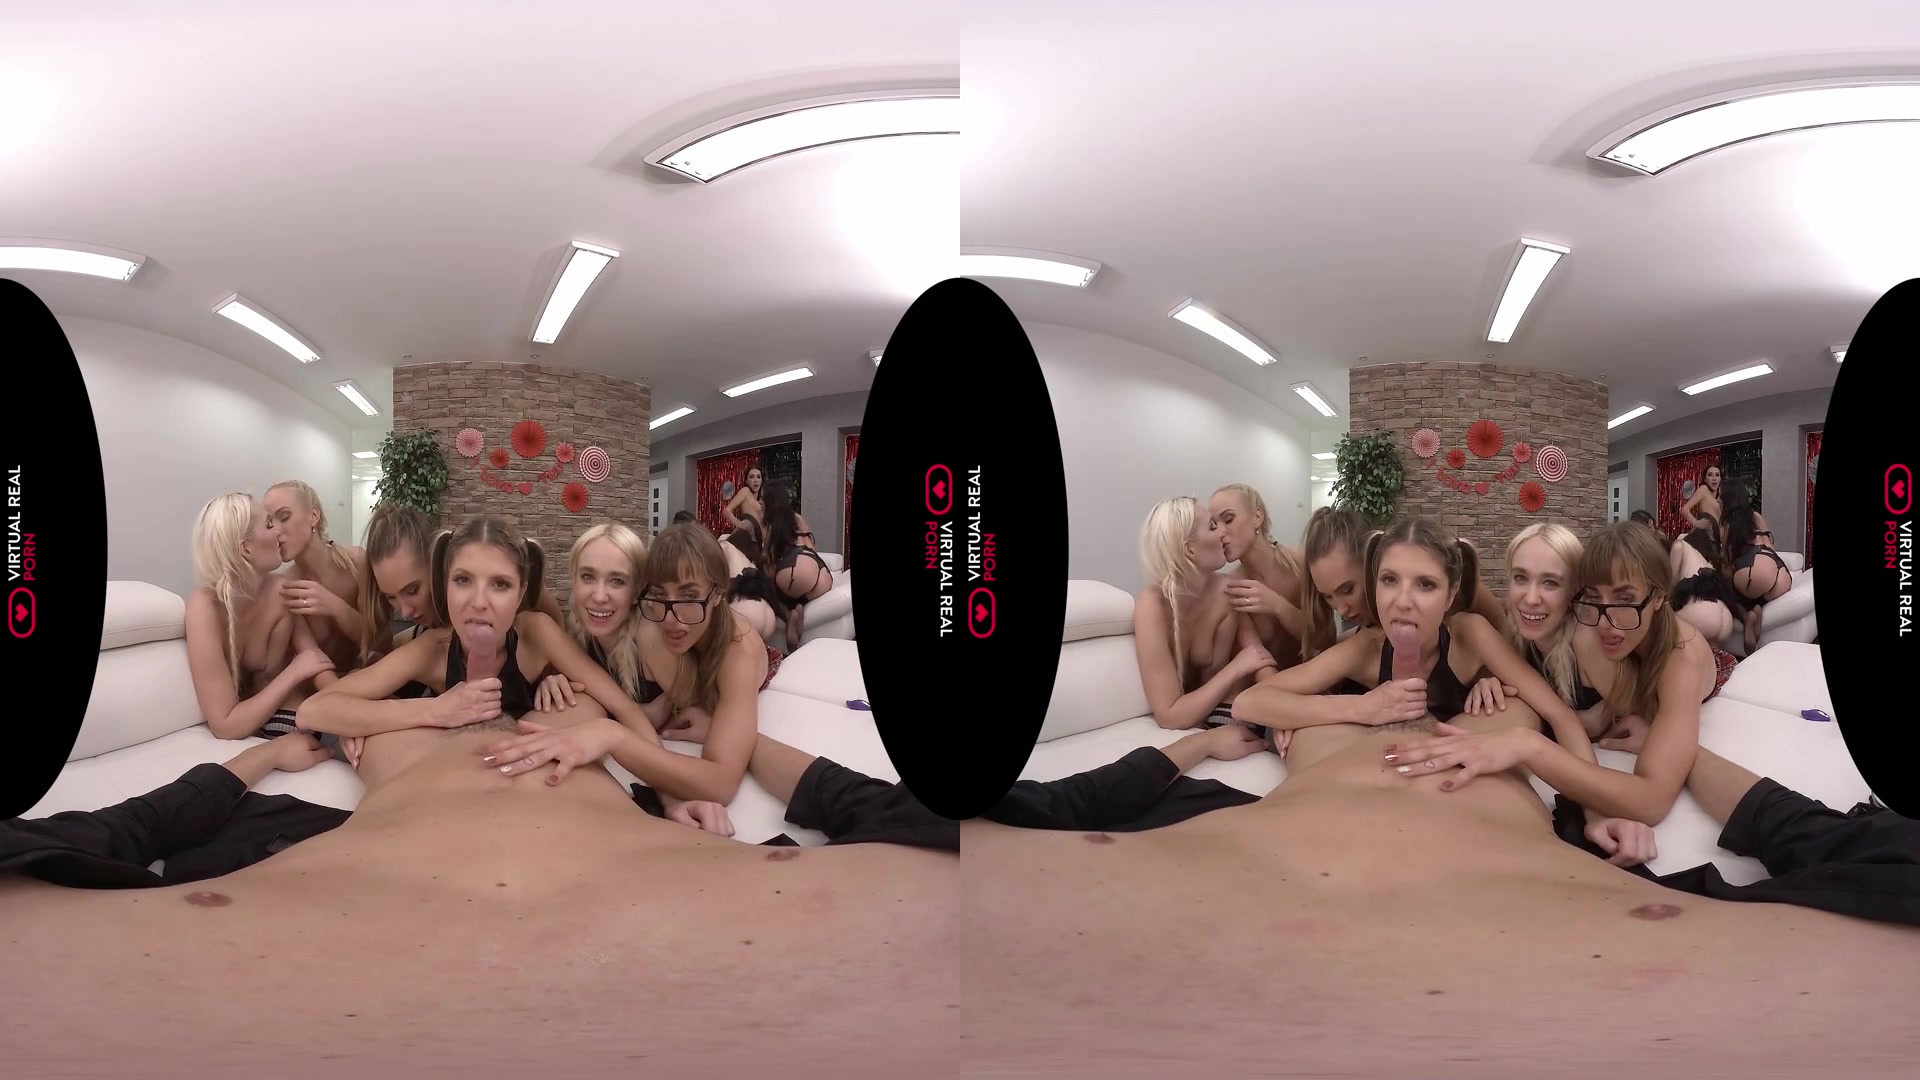 12 Chicas en Navidad - Realidad Virtual